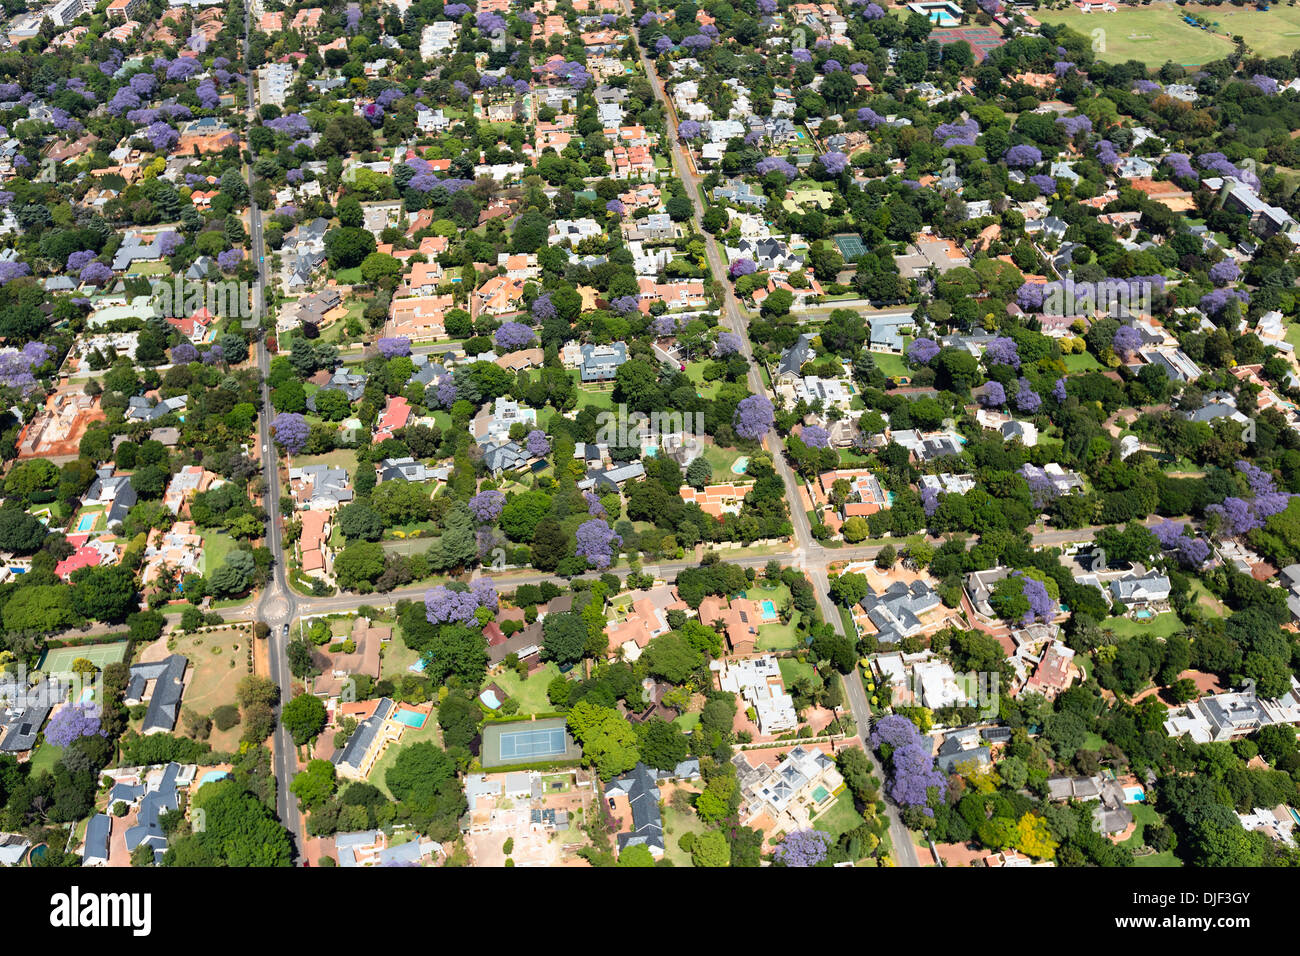 Vista aérea de jacarandas en flor,los suburbios de Johannesburgo, convirtiéndola en una de las ciudades más verdes del mundo.Sudáfrica Foto de stock